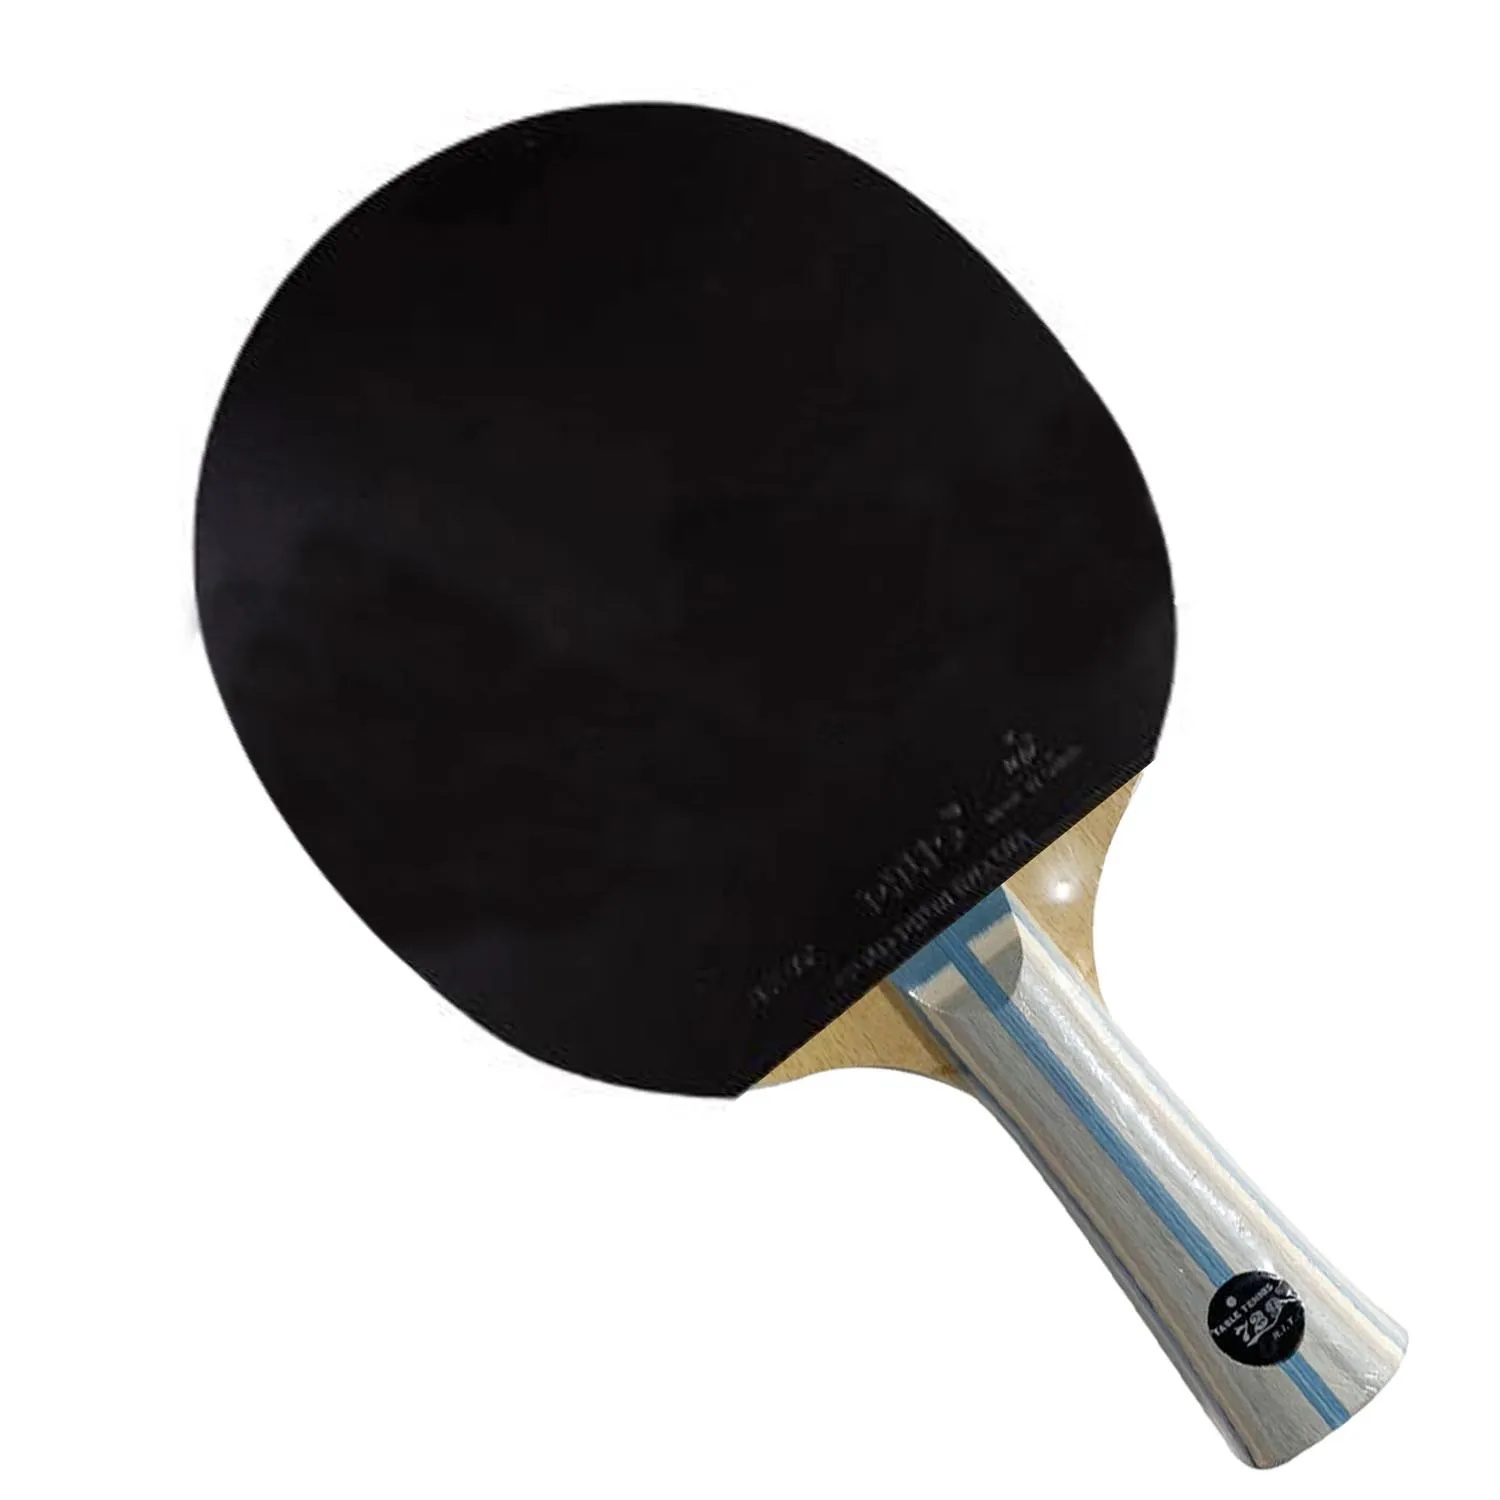 Профессиональная Комбинированная Ракетка для настольного тенниса Ping Pong Paddle ALL ++ RITC 729 Friendship C-3 Blade с 2-мя СИНИМИ матовыми каучуками Palio AK47